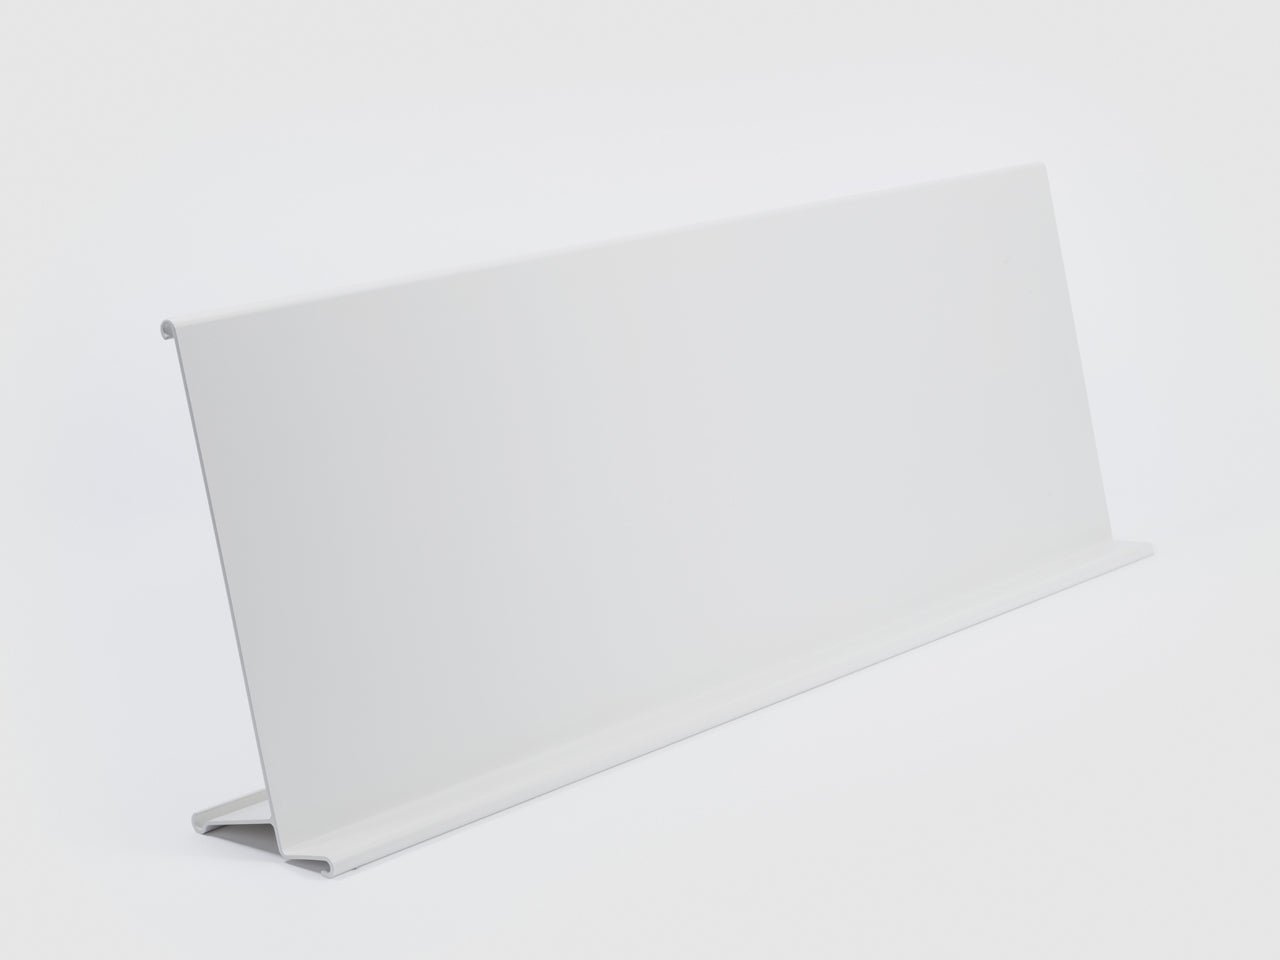 Danese Milano Paper Board Display | Panik Design